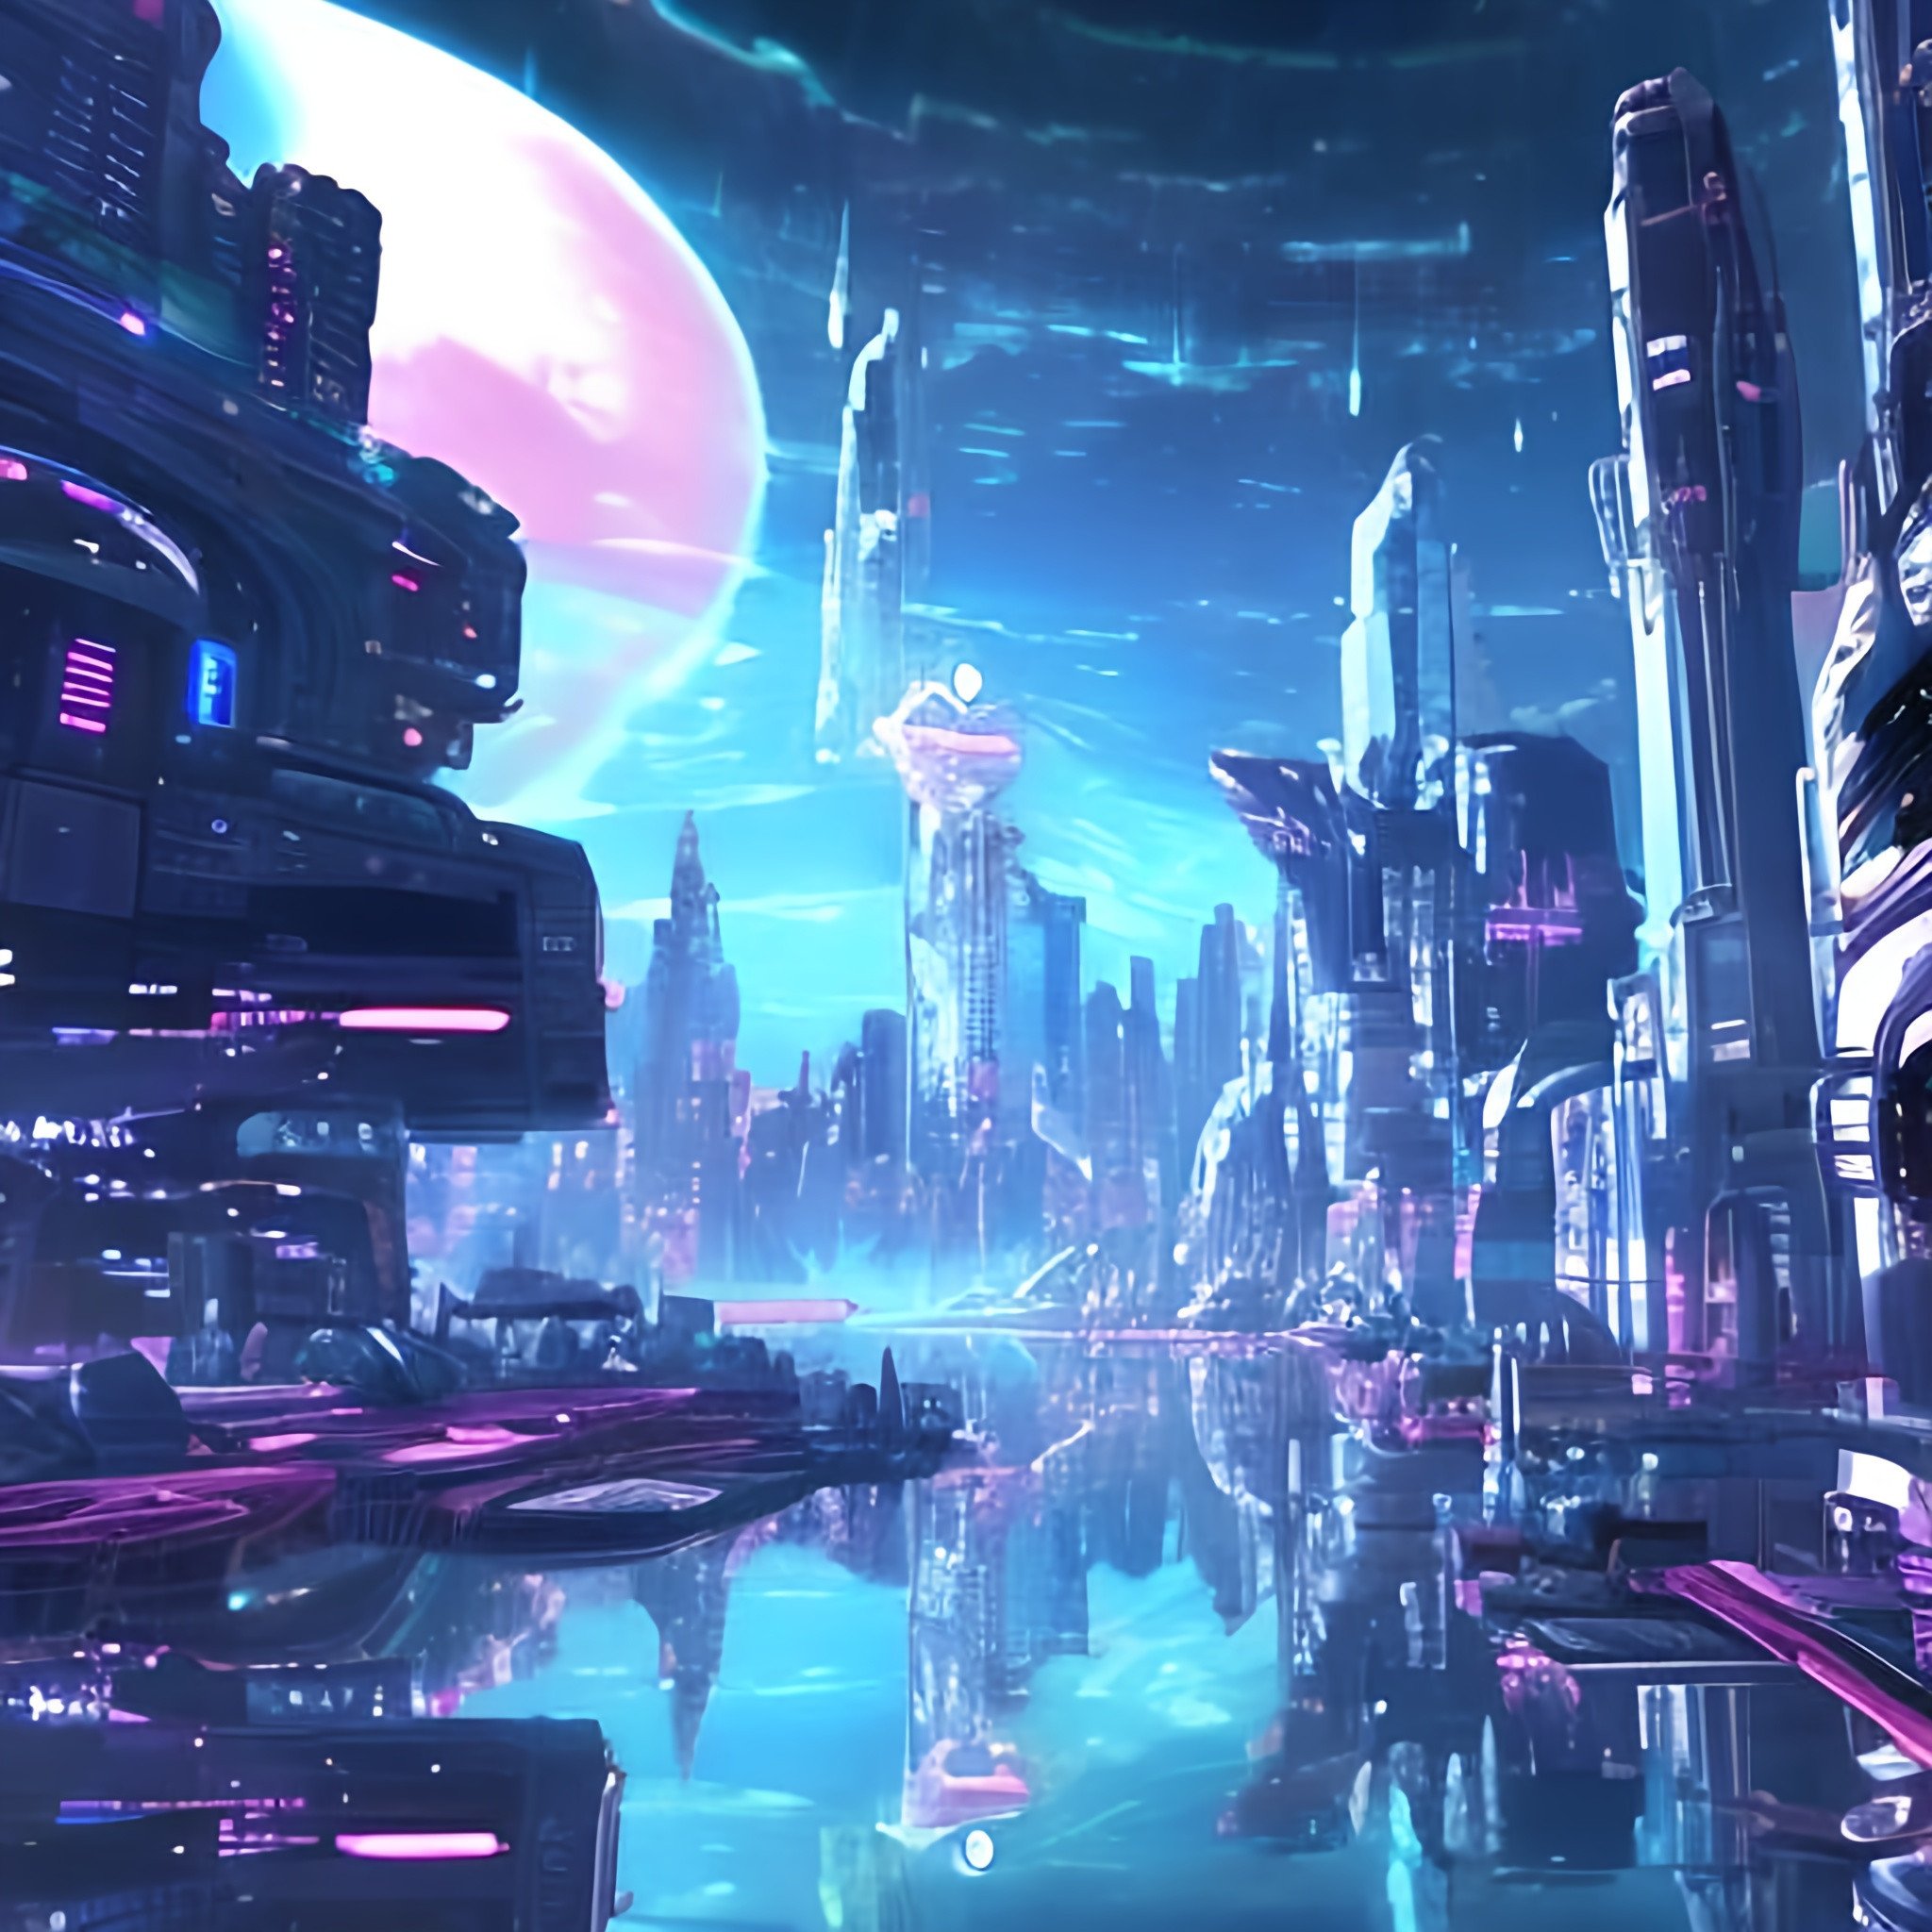 a cybercity in space, anime | OpenArt